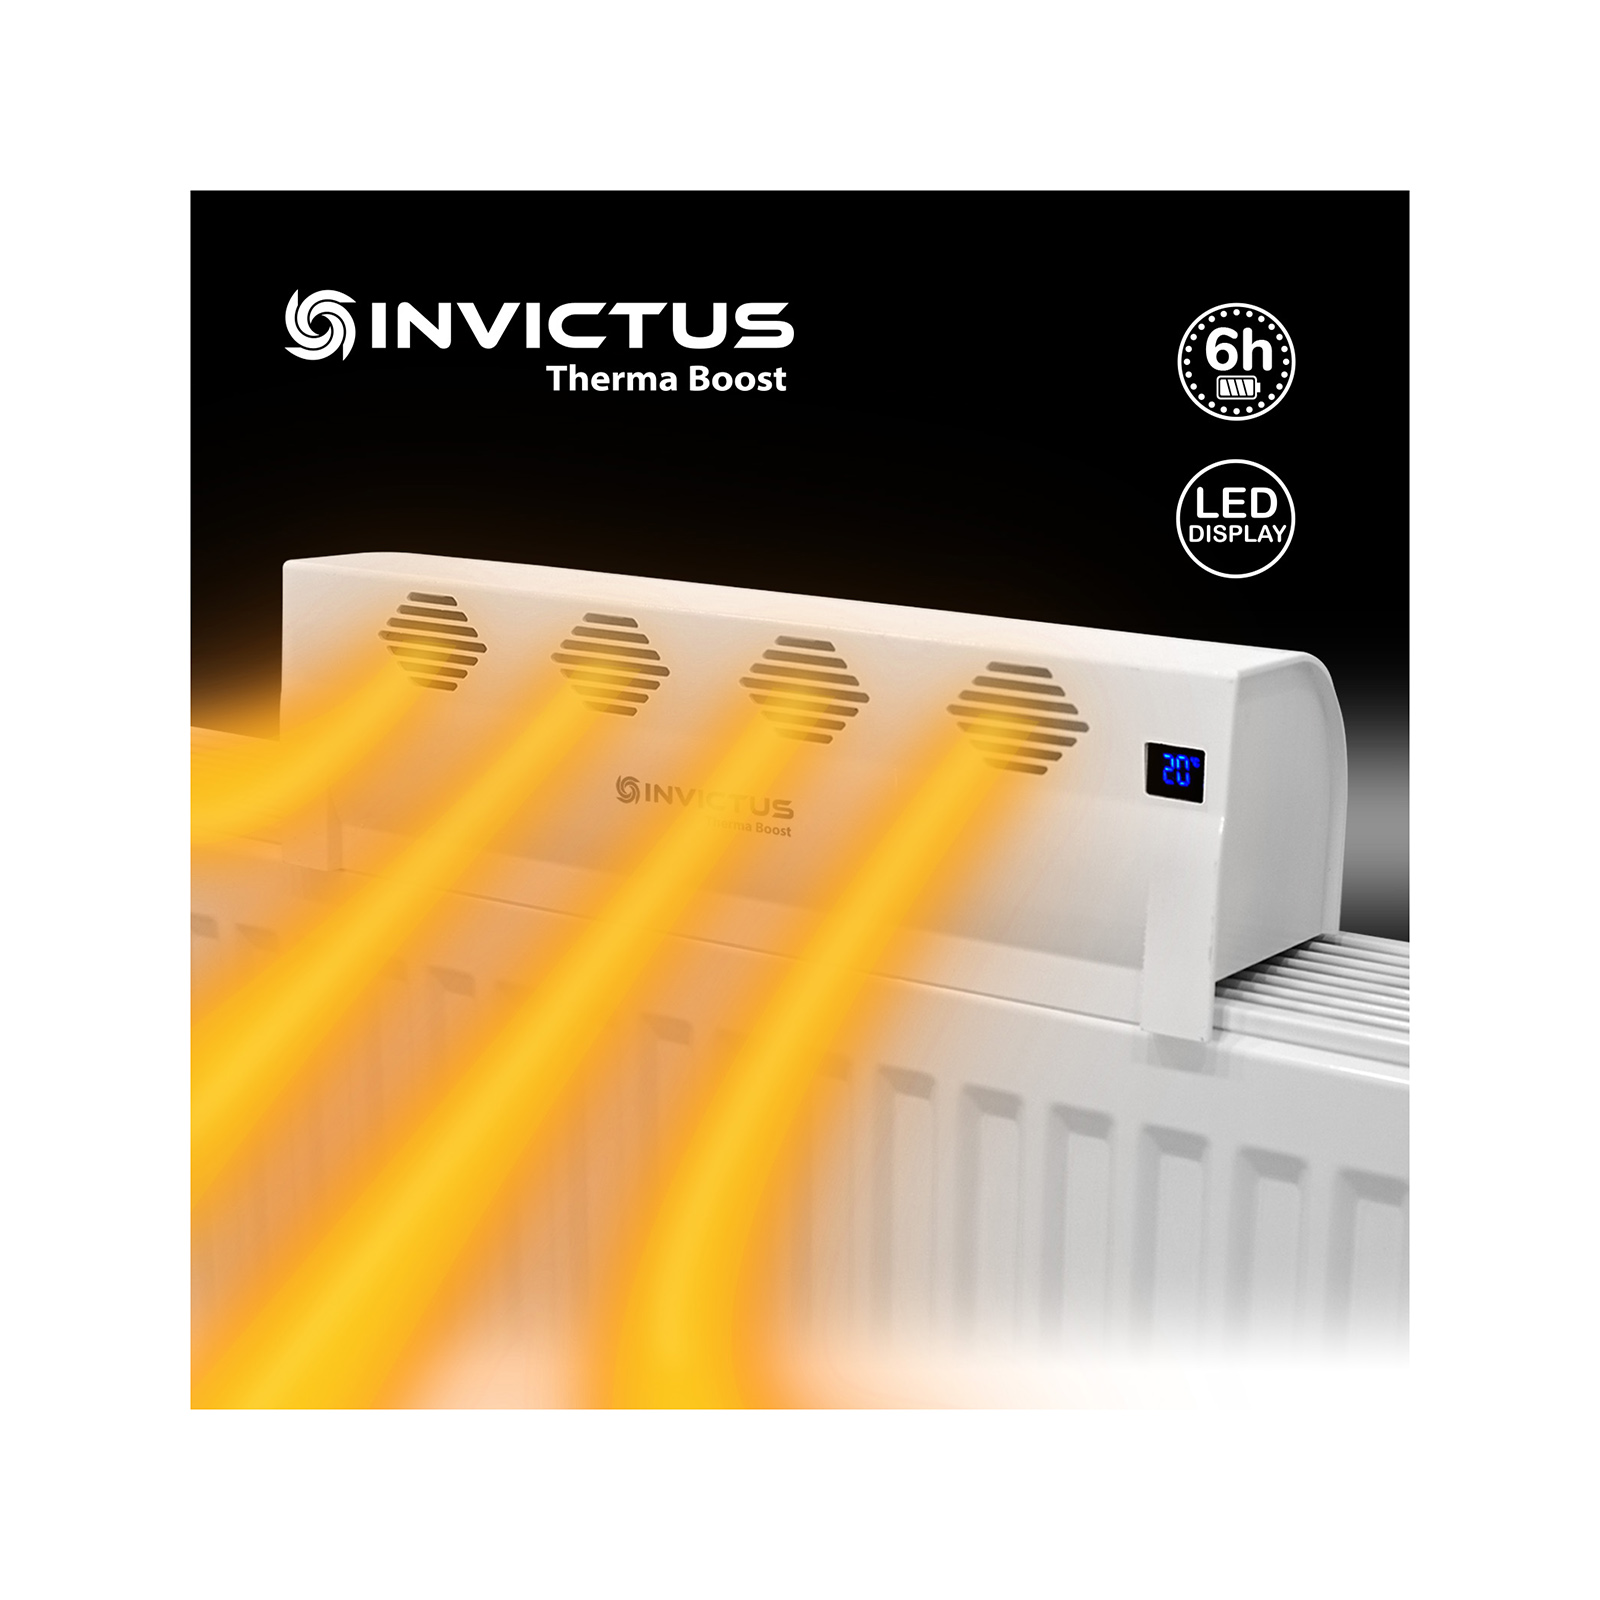 GENIUS Heizungsventilator Invictus Therma Boost bis zu 6h Laufzeit LED  Display 